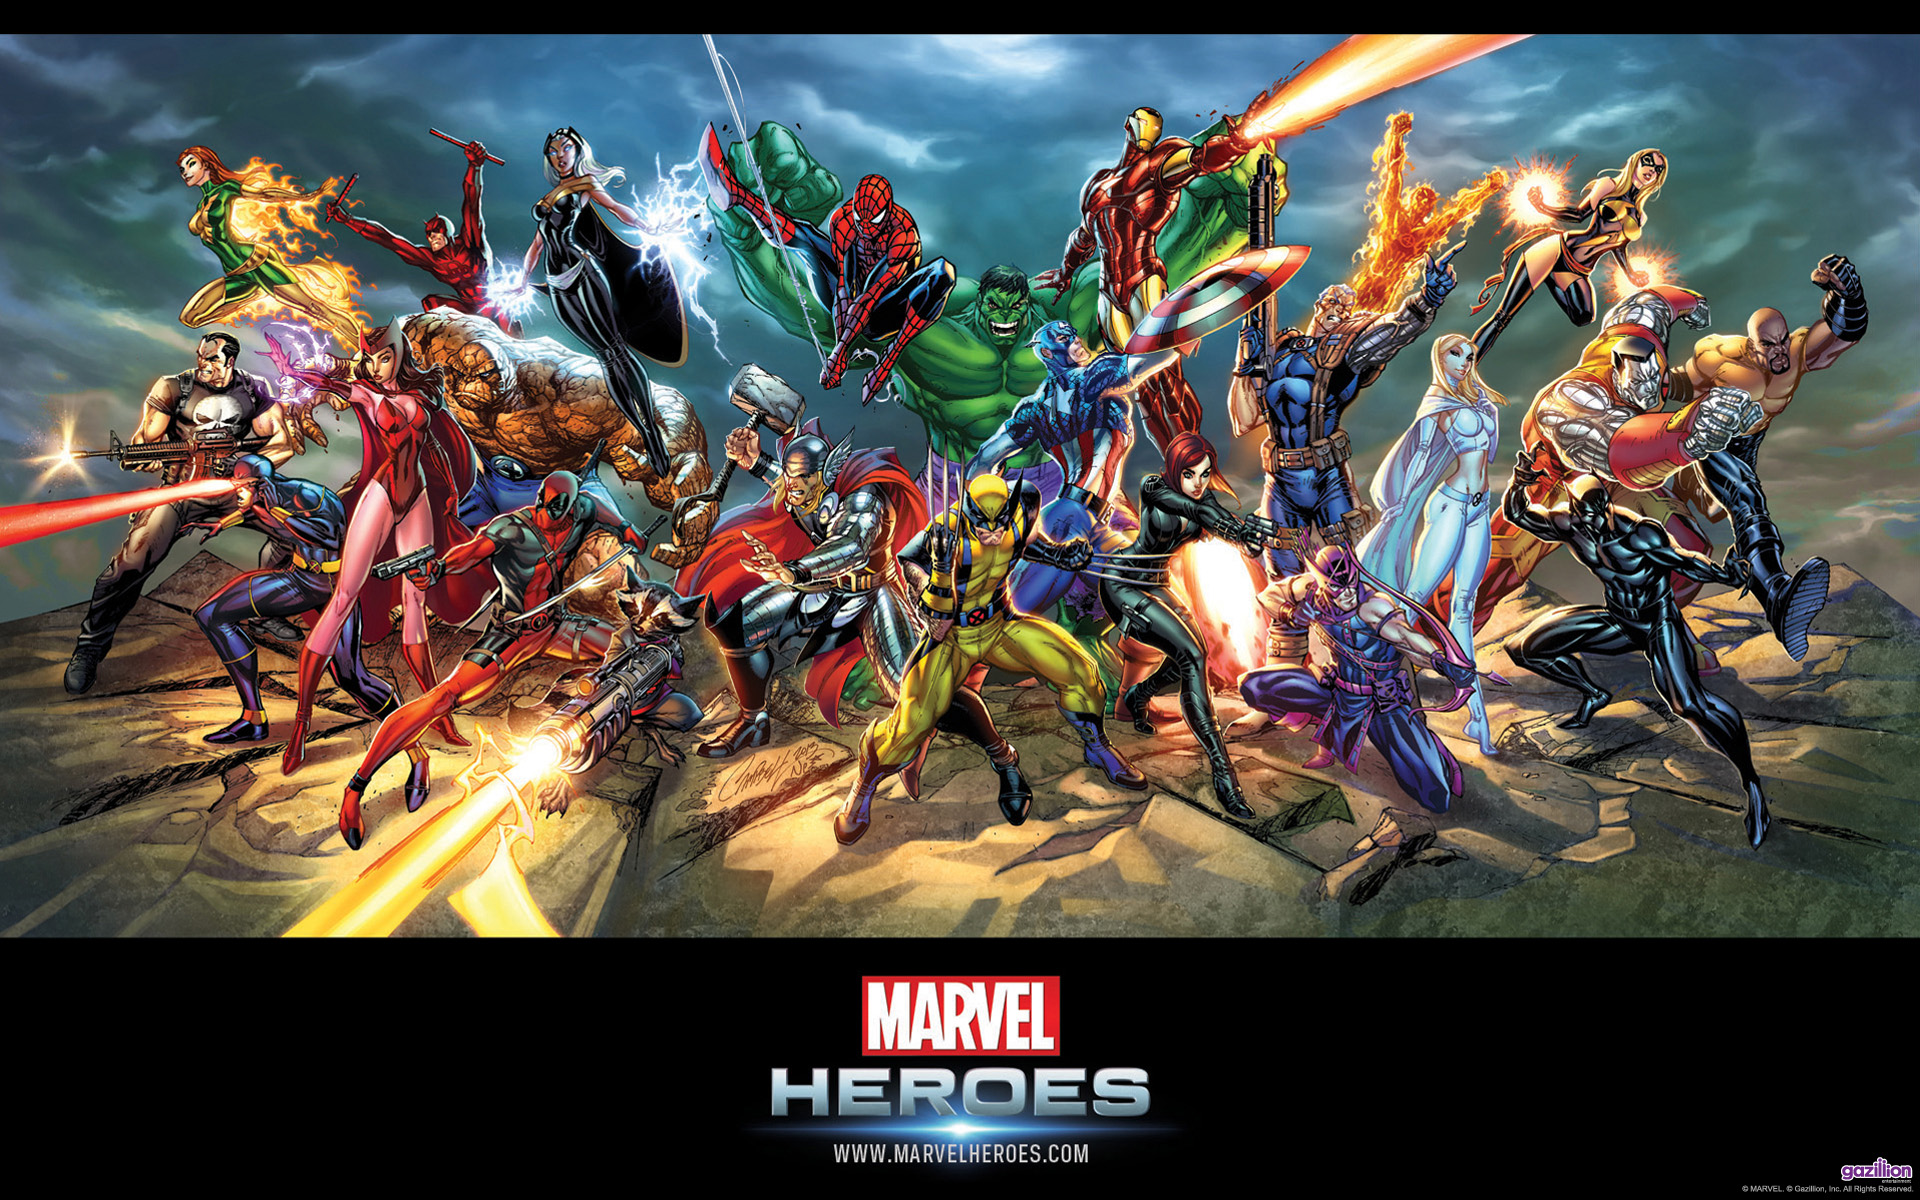 marvel superheroes fondos de pantalla hd,juego de acción y aventura,juego de pc,mitología,juegos,héroe